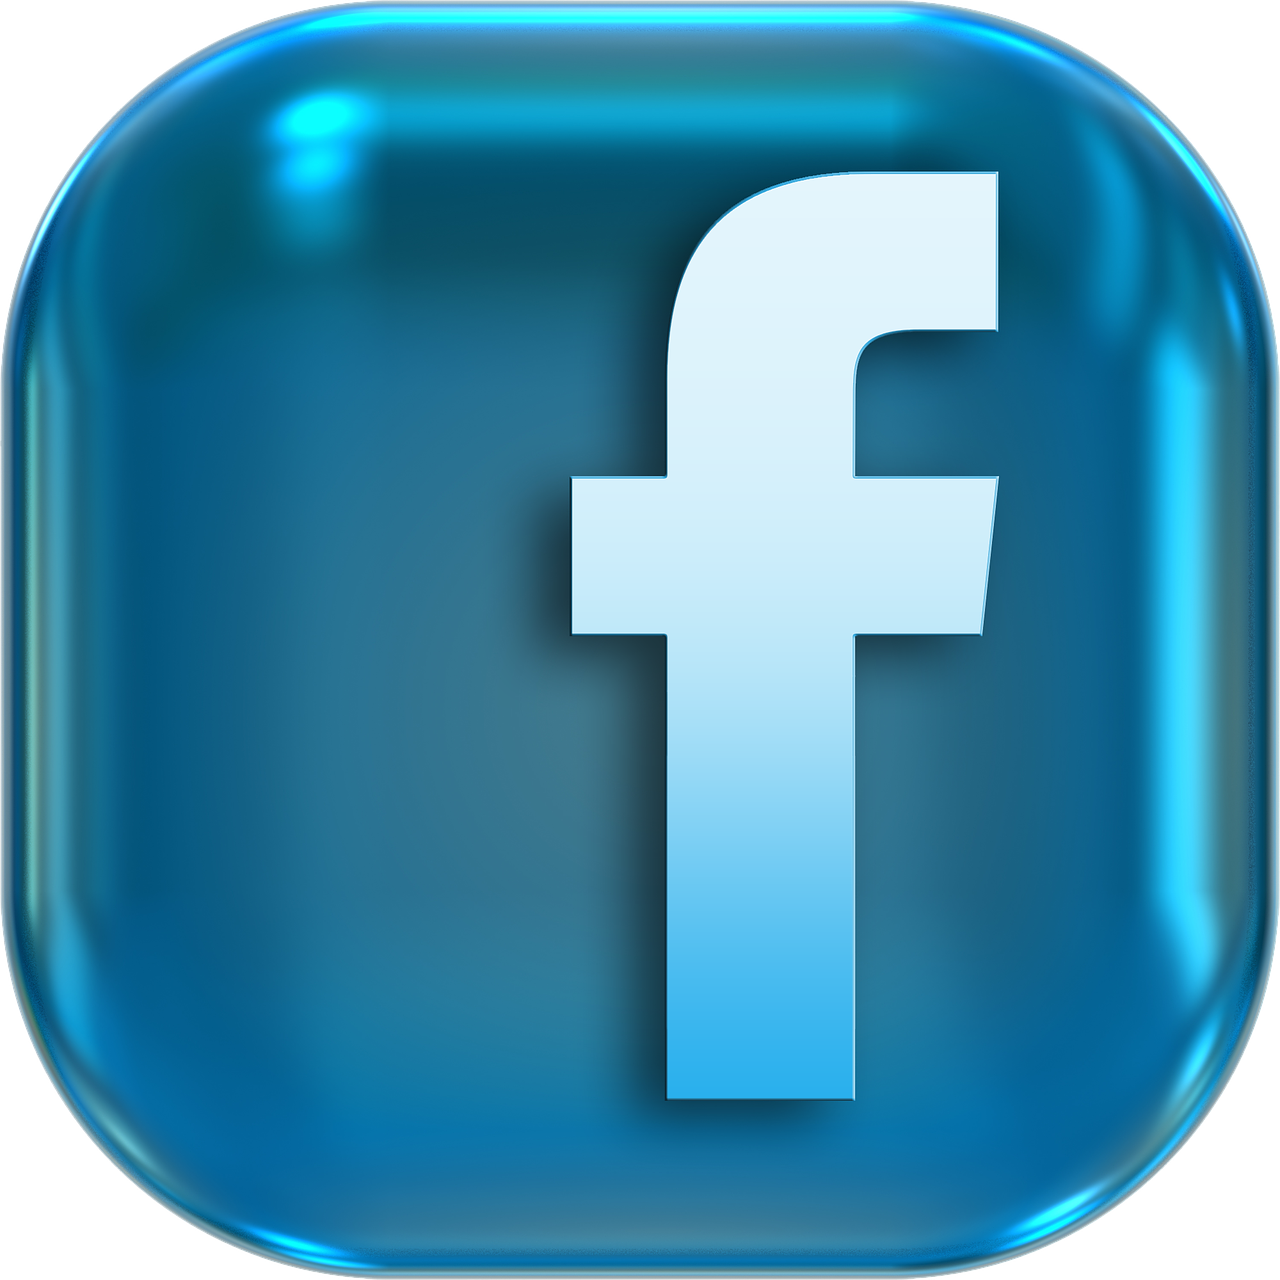 Lire la suite à propos de l’article Conseils essentiels pour sécuriser votre compte Facebook